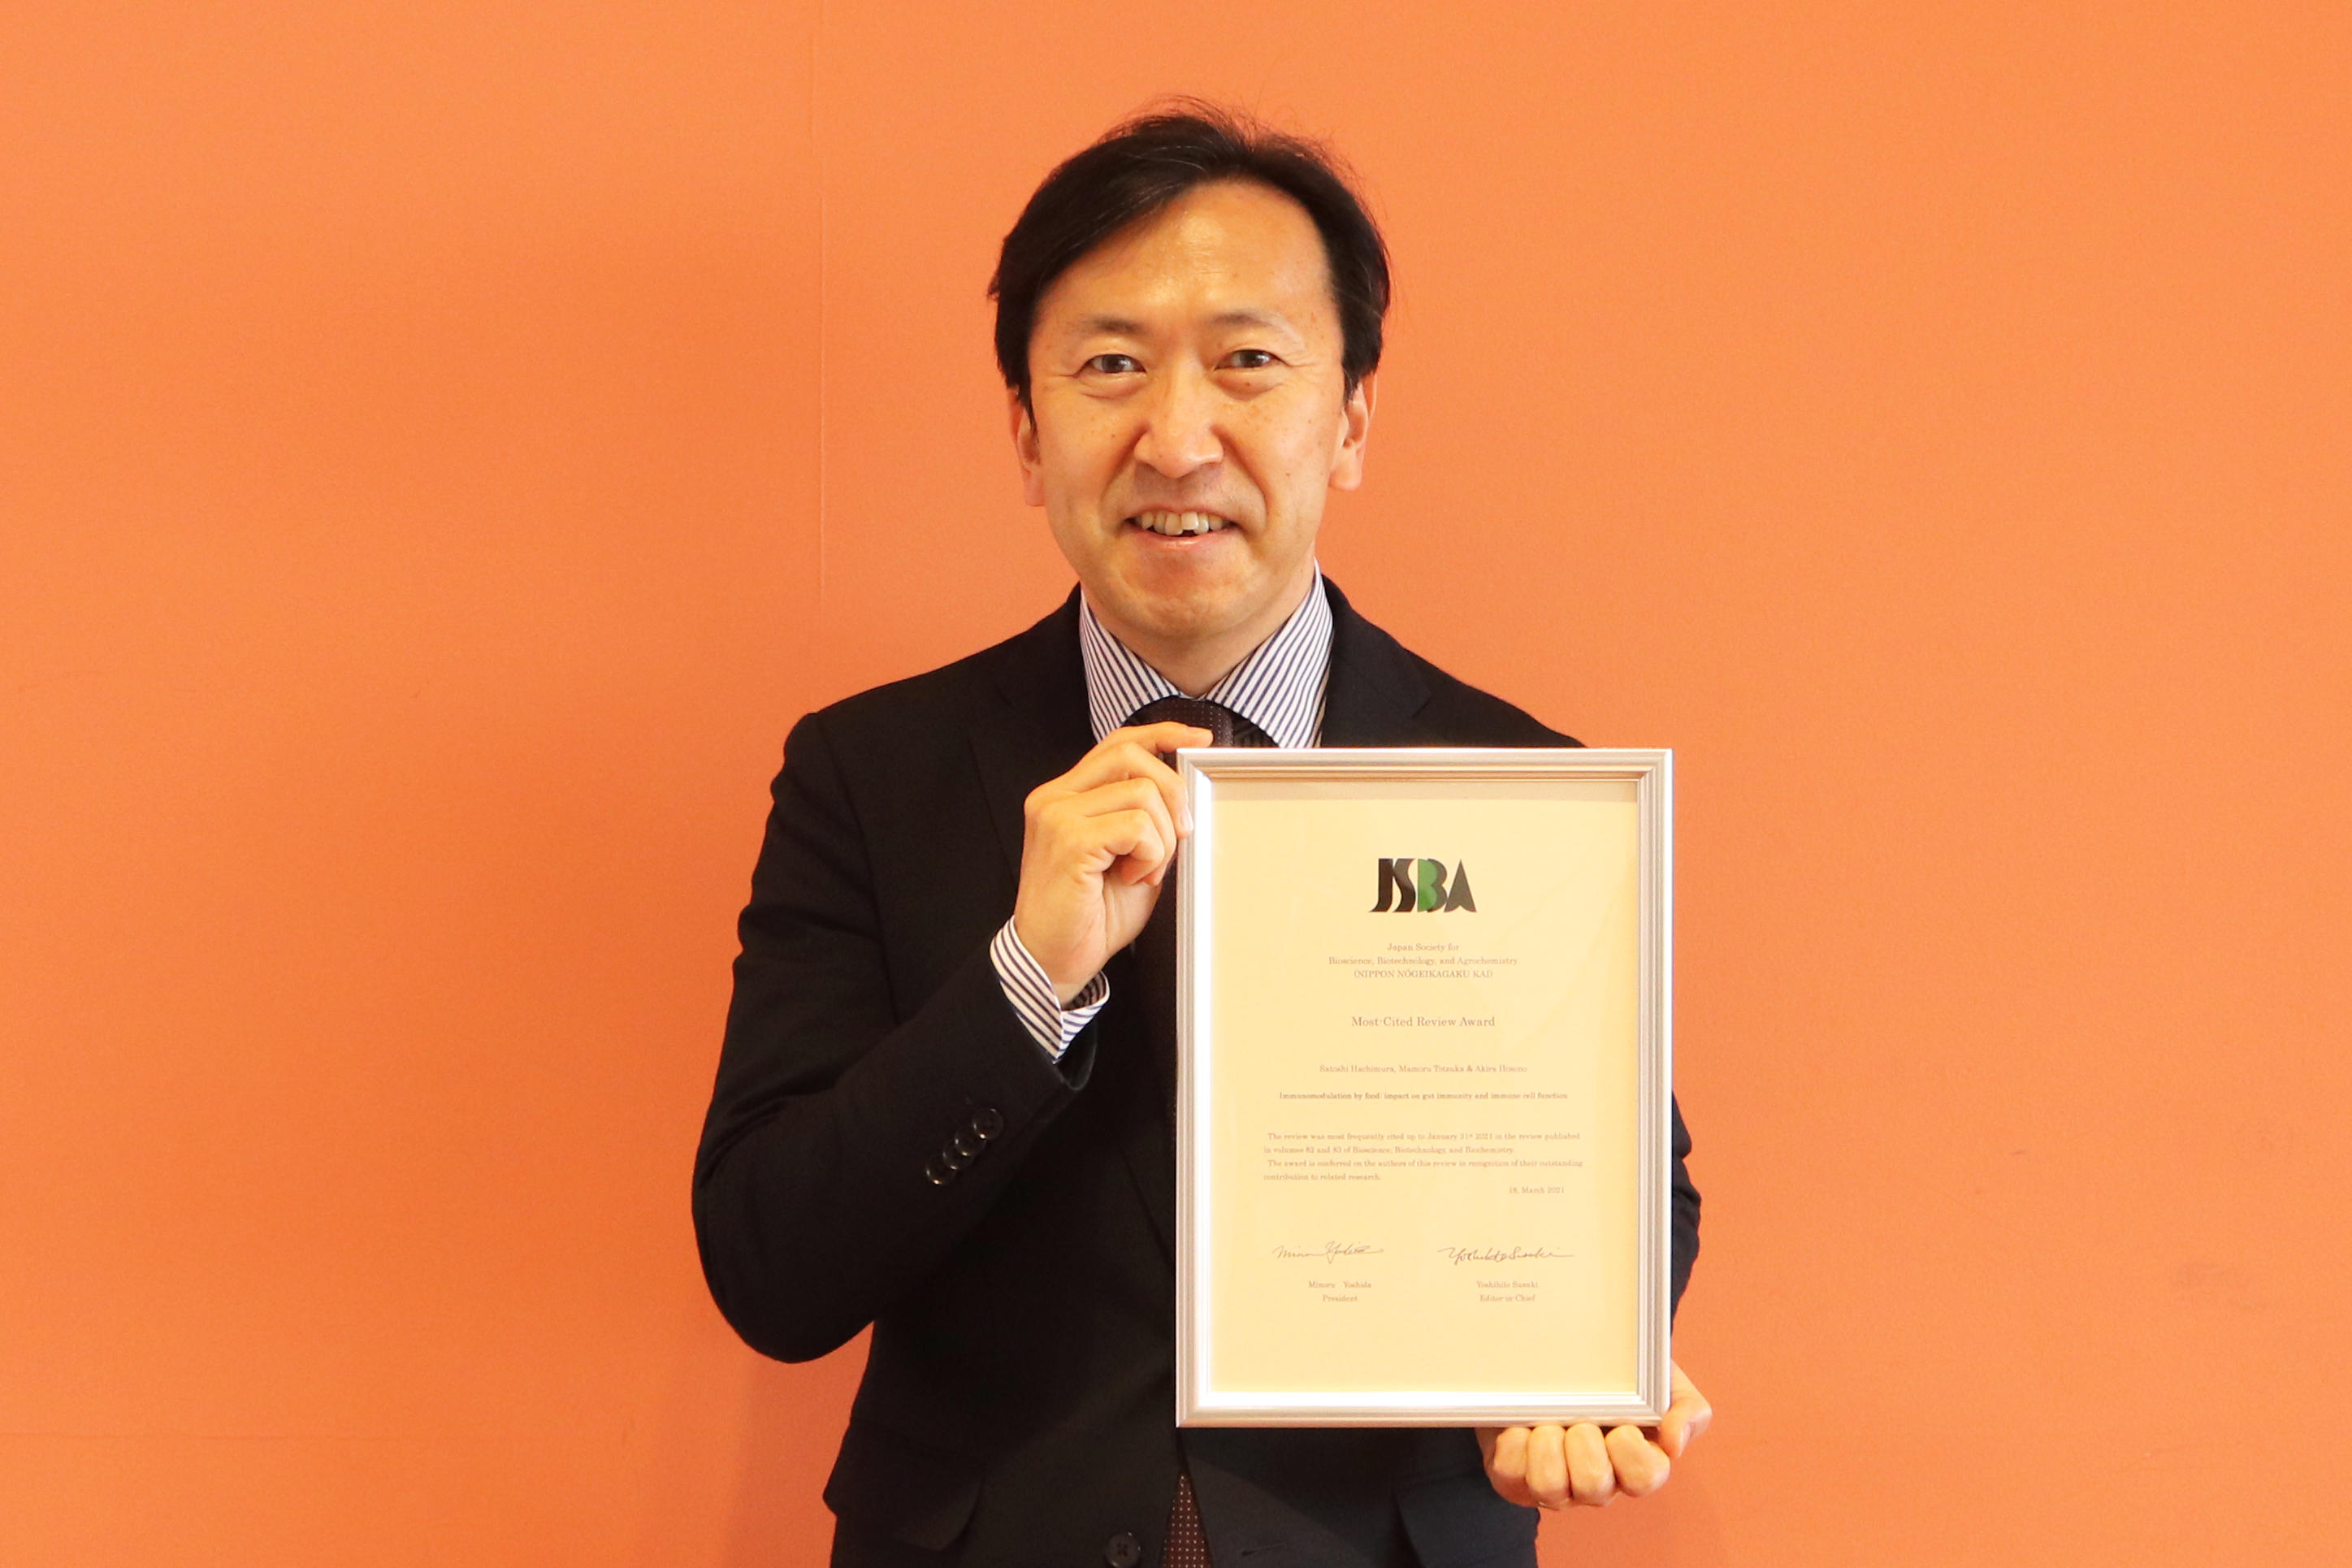 日本獣医生命科学大学応用生命科学部食品科学科の戸塚護教授が共著者となっている論文が公益社団法人日本農芸化学会の「2020年BBB Most-cited Review Award」を受賞